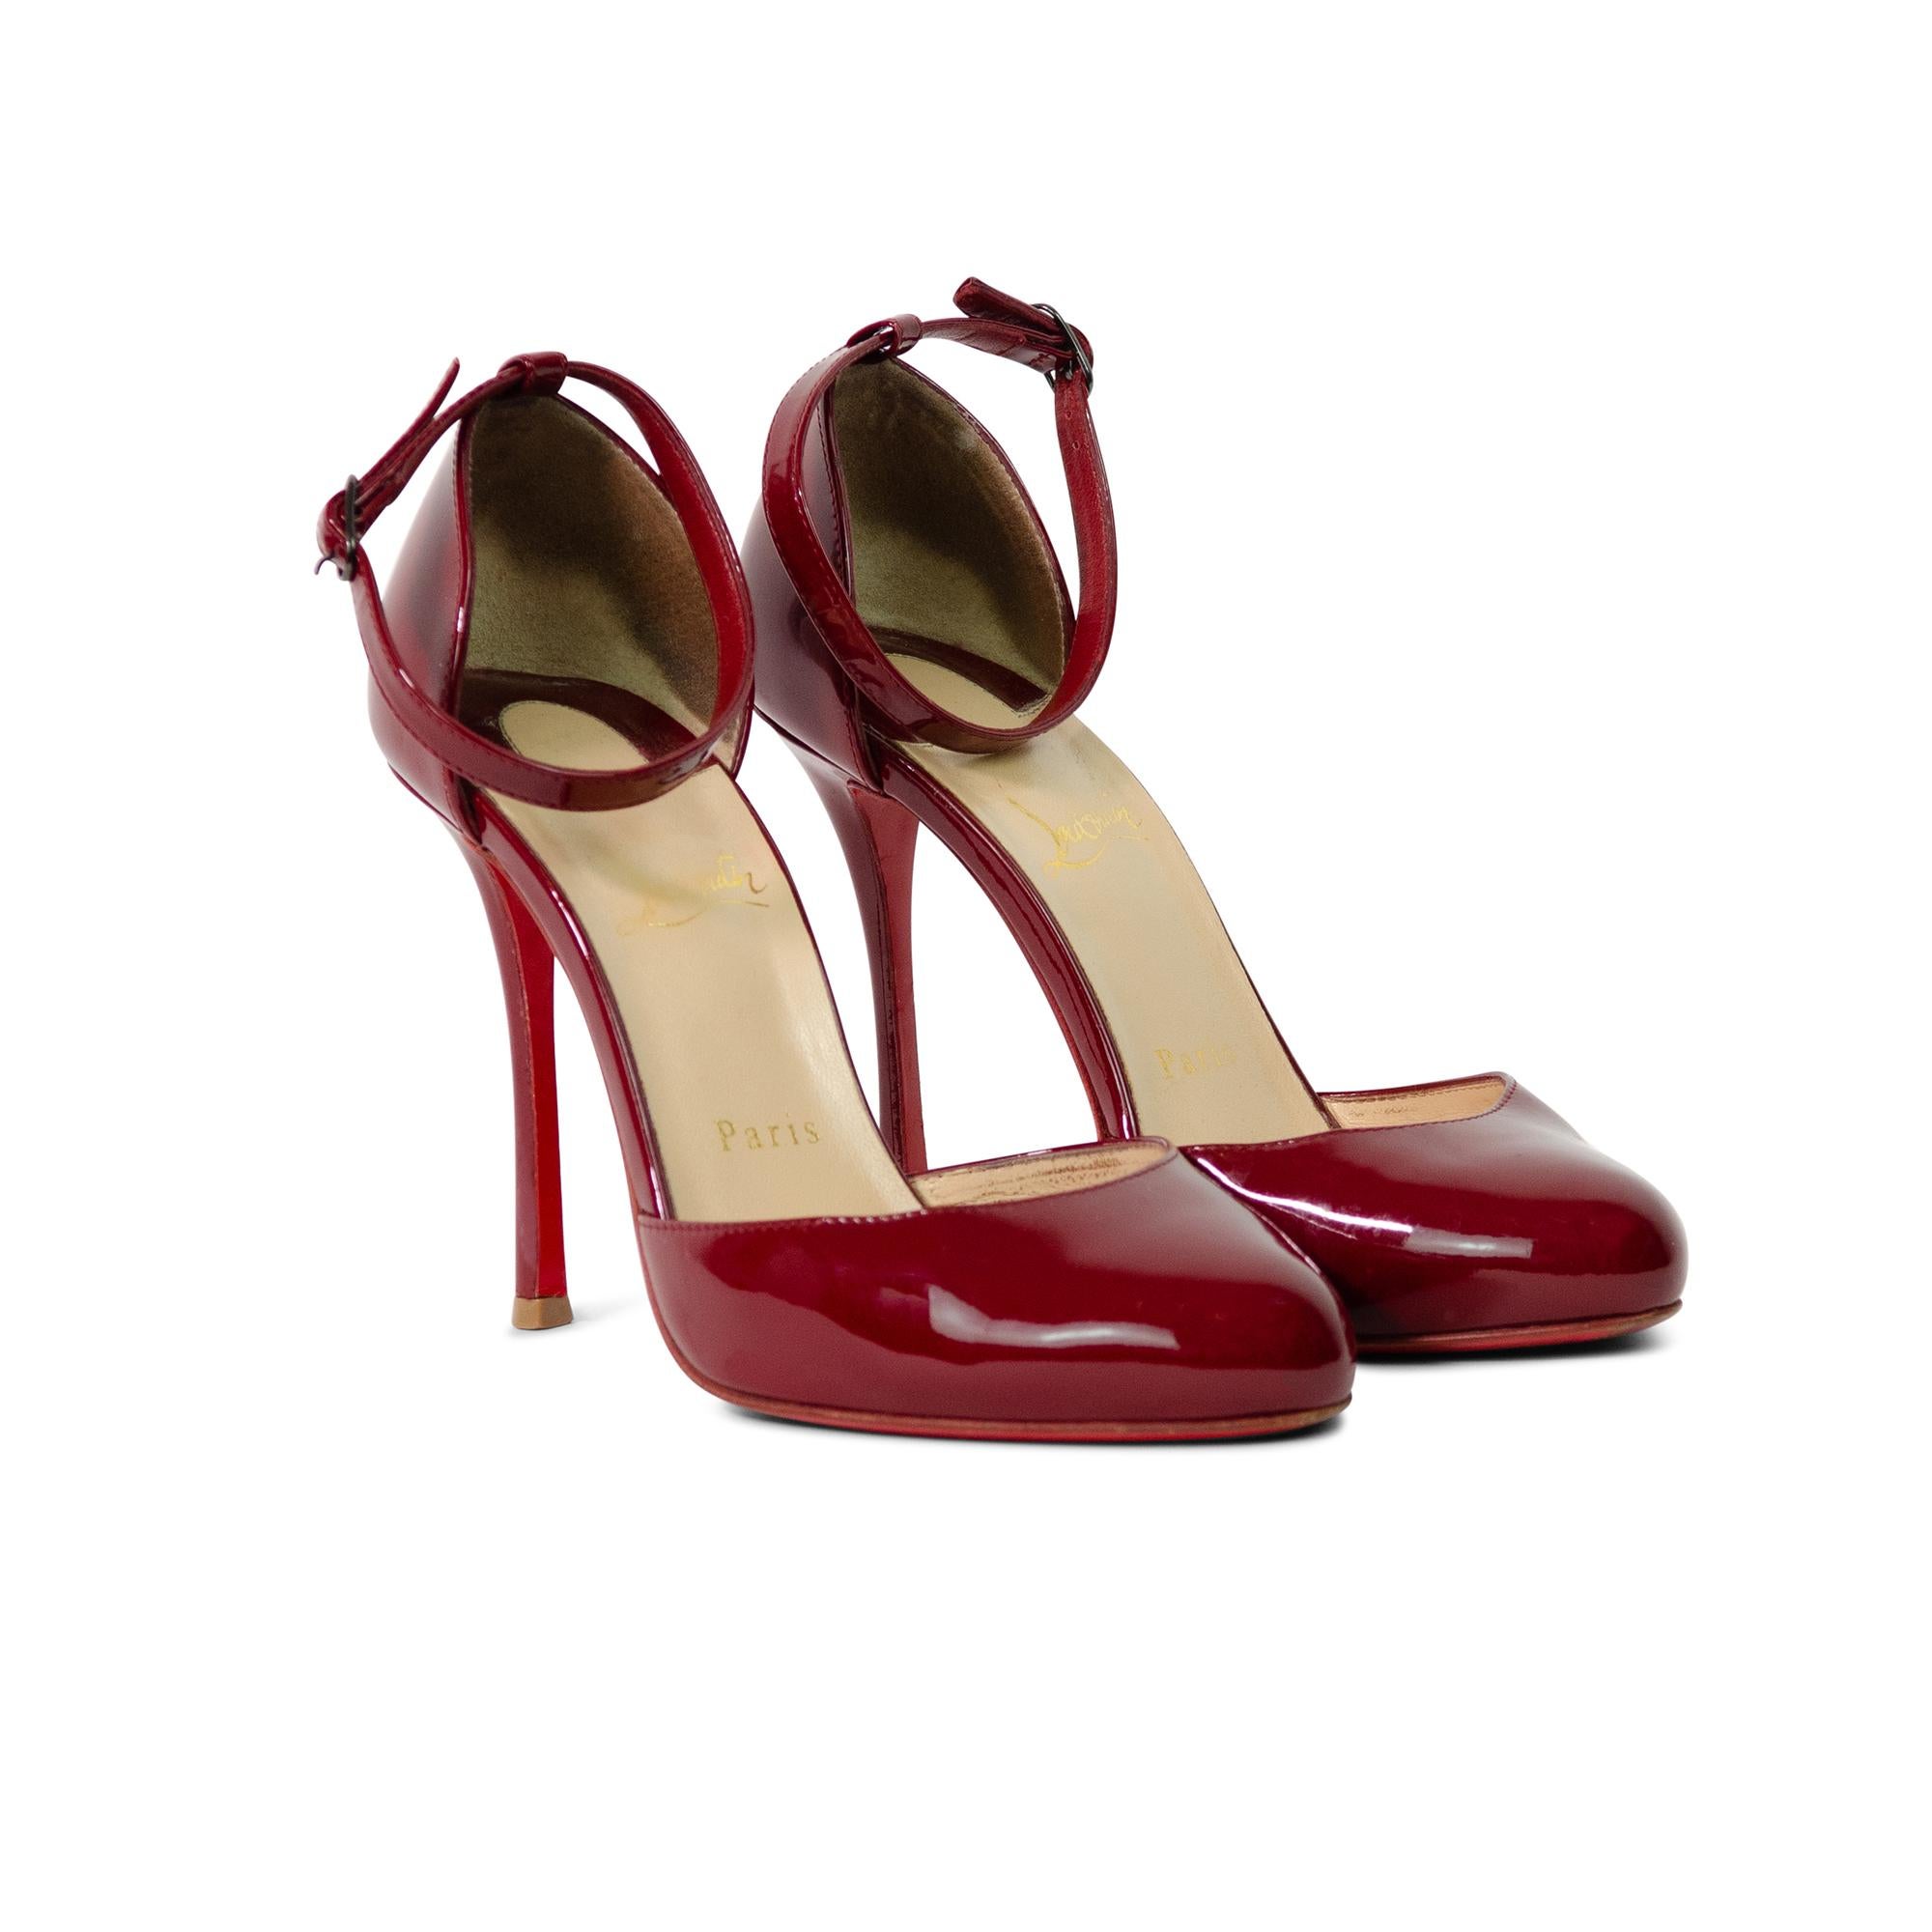 Schöne Christian Louboutin Vintage Style Patent Red High Heels.

Diese von Vintage inspirierten Louboutins sind aus glänzendem, tiefrotem Lackleder gefertigt und verfügen über einen Knöchelriemen, eine abgerundete Spitze, einen 11 cm hohen Absatz